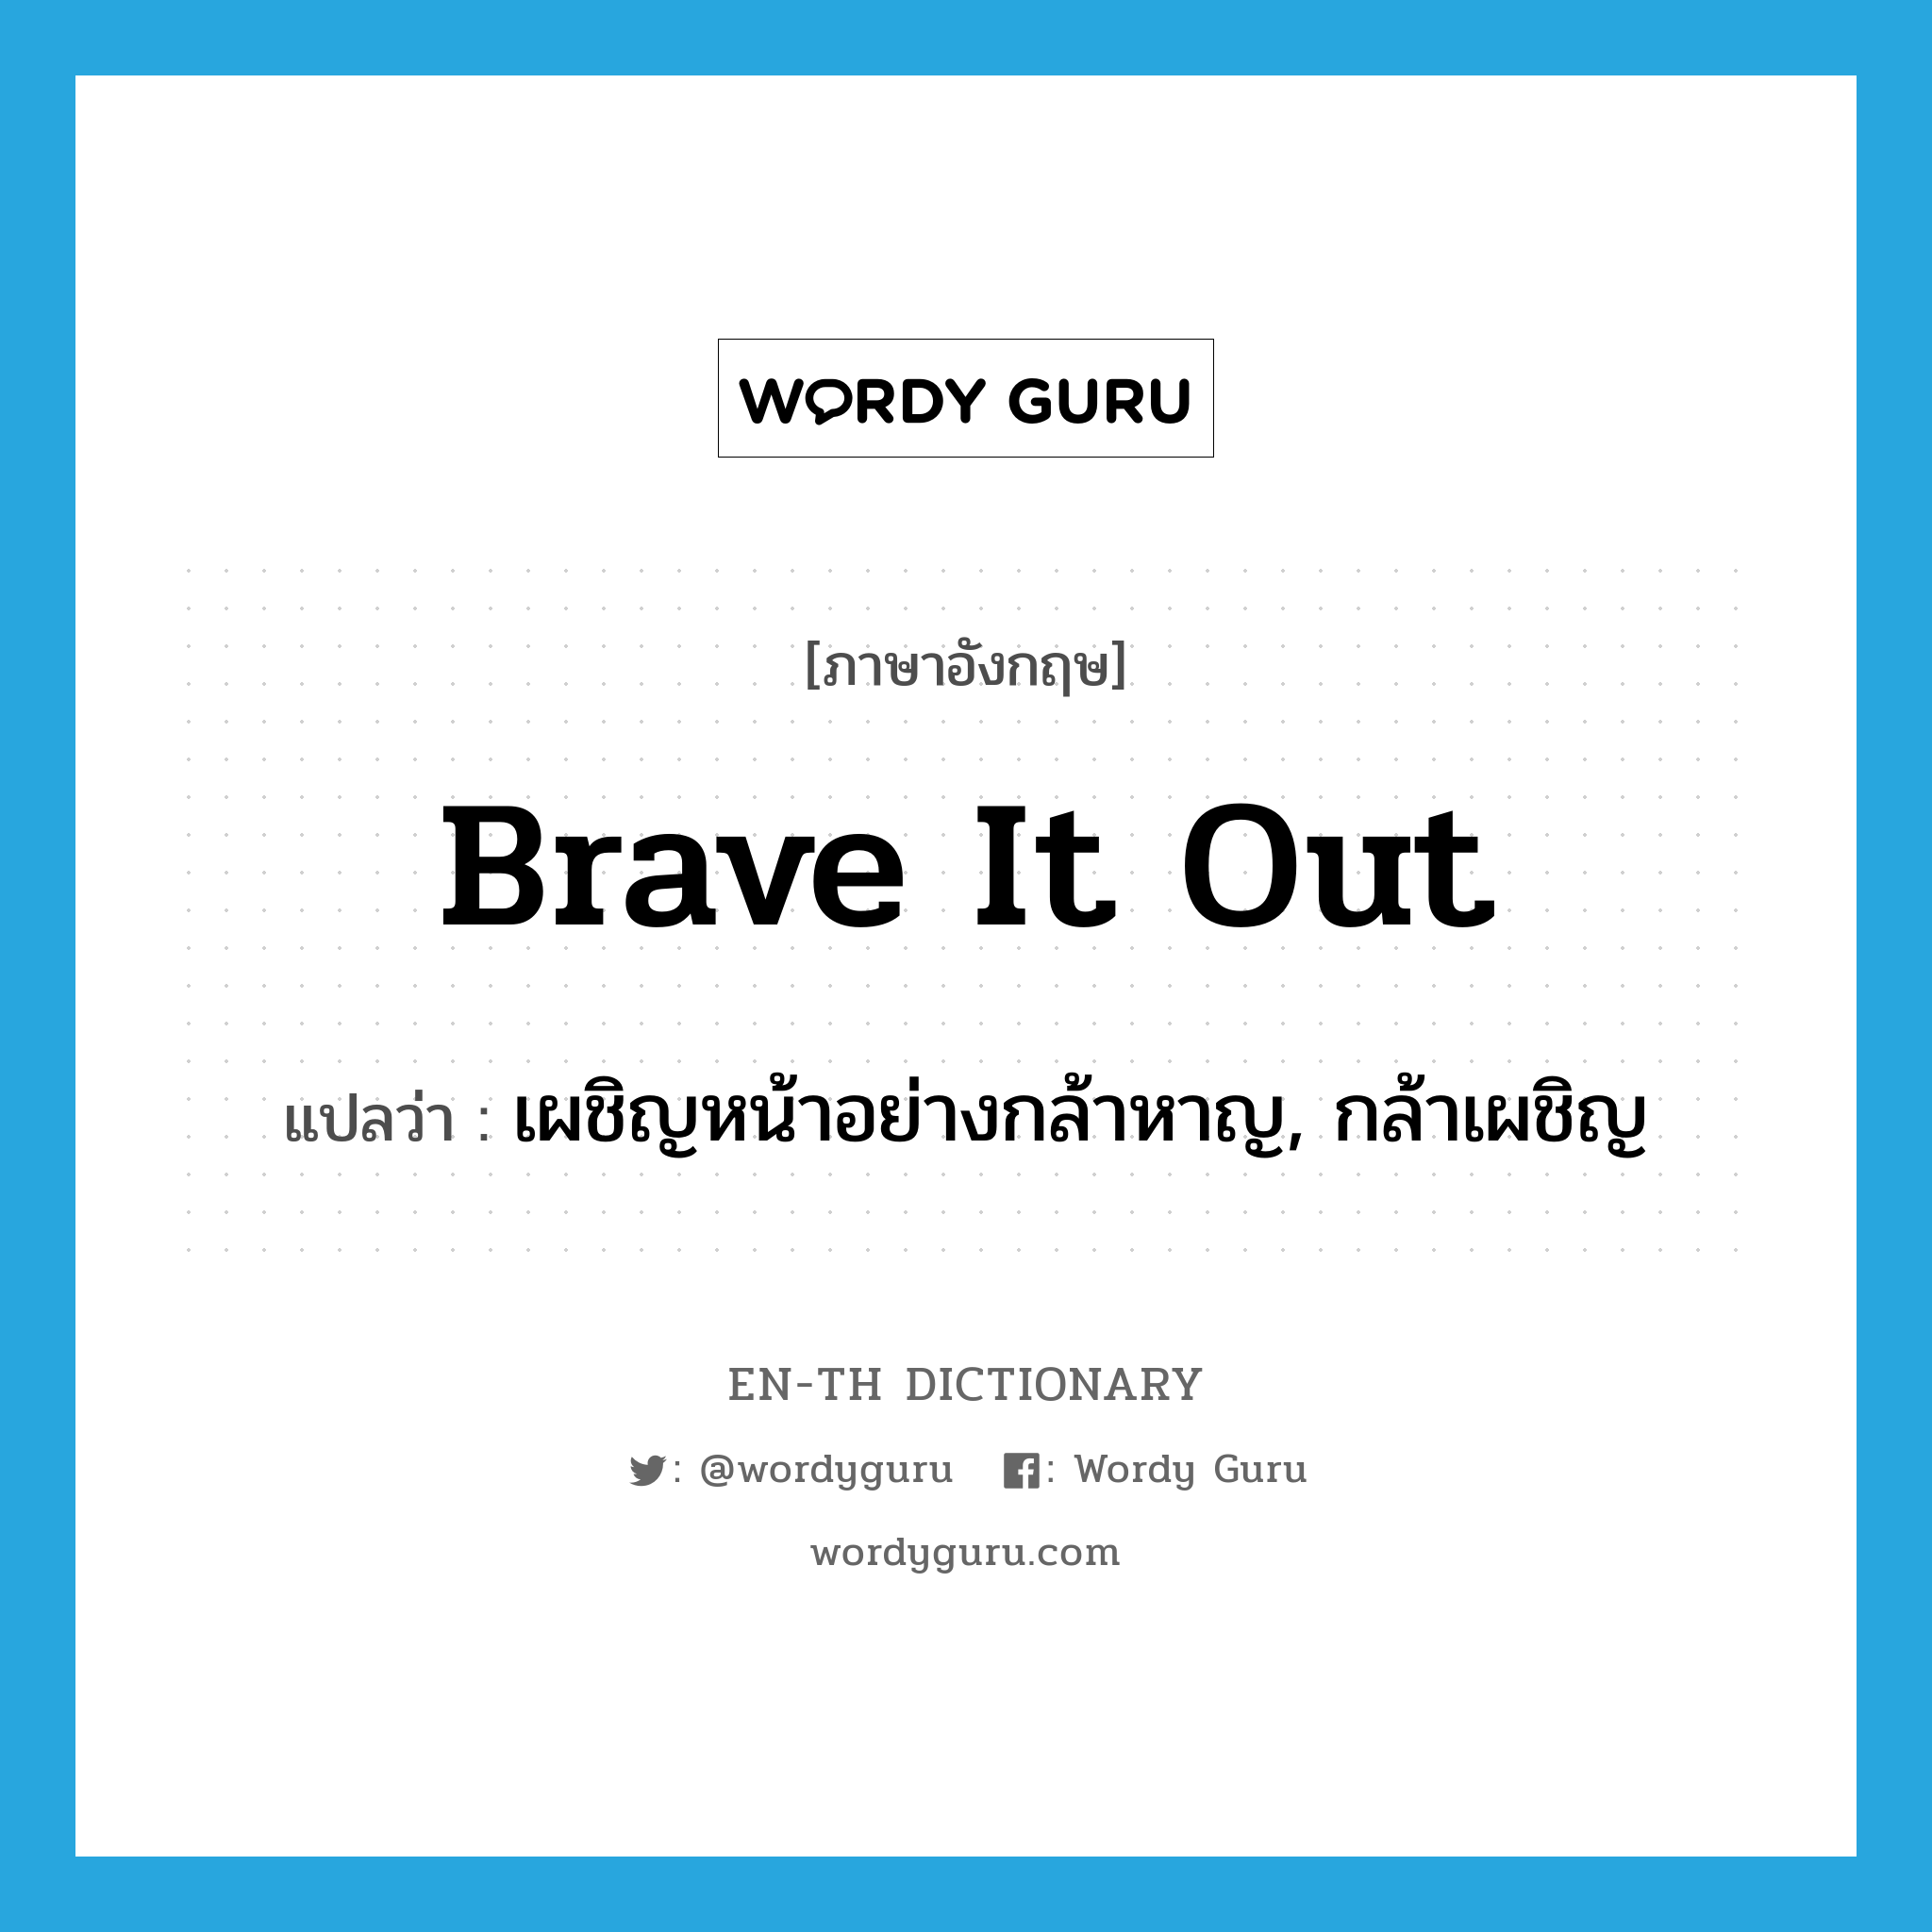 เผชิญหน้าอย่างกล้าหาญ, กล้าเผชิญ ภาษาอังกฤษ?, คำศัพท์ภาษาอังกฤษ เผชิญหน้าอย่างกล้าหาญ, กล้าเผชิญ แปลว่า brave it out ประเภท PHRV หมวด PHRV